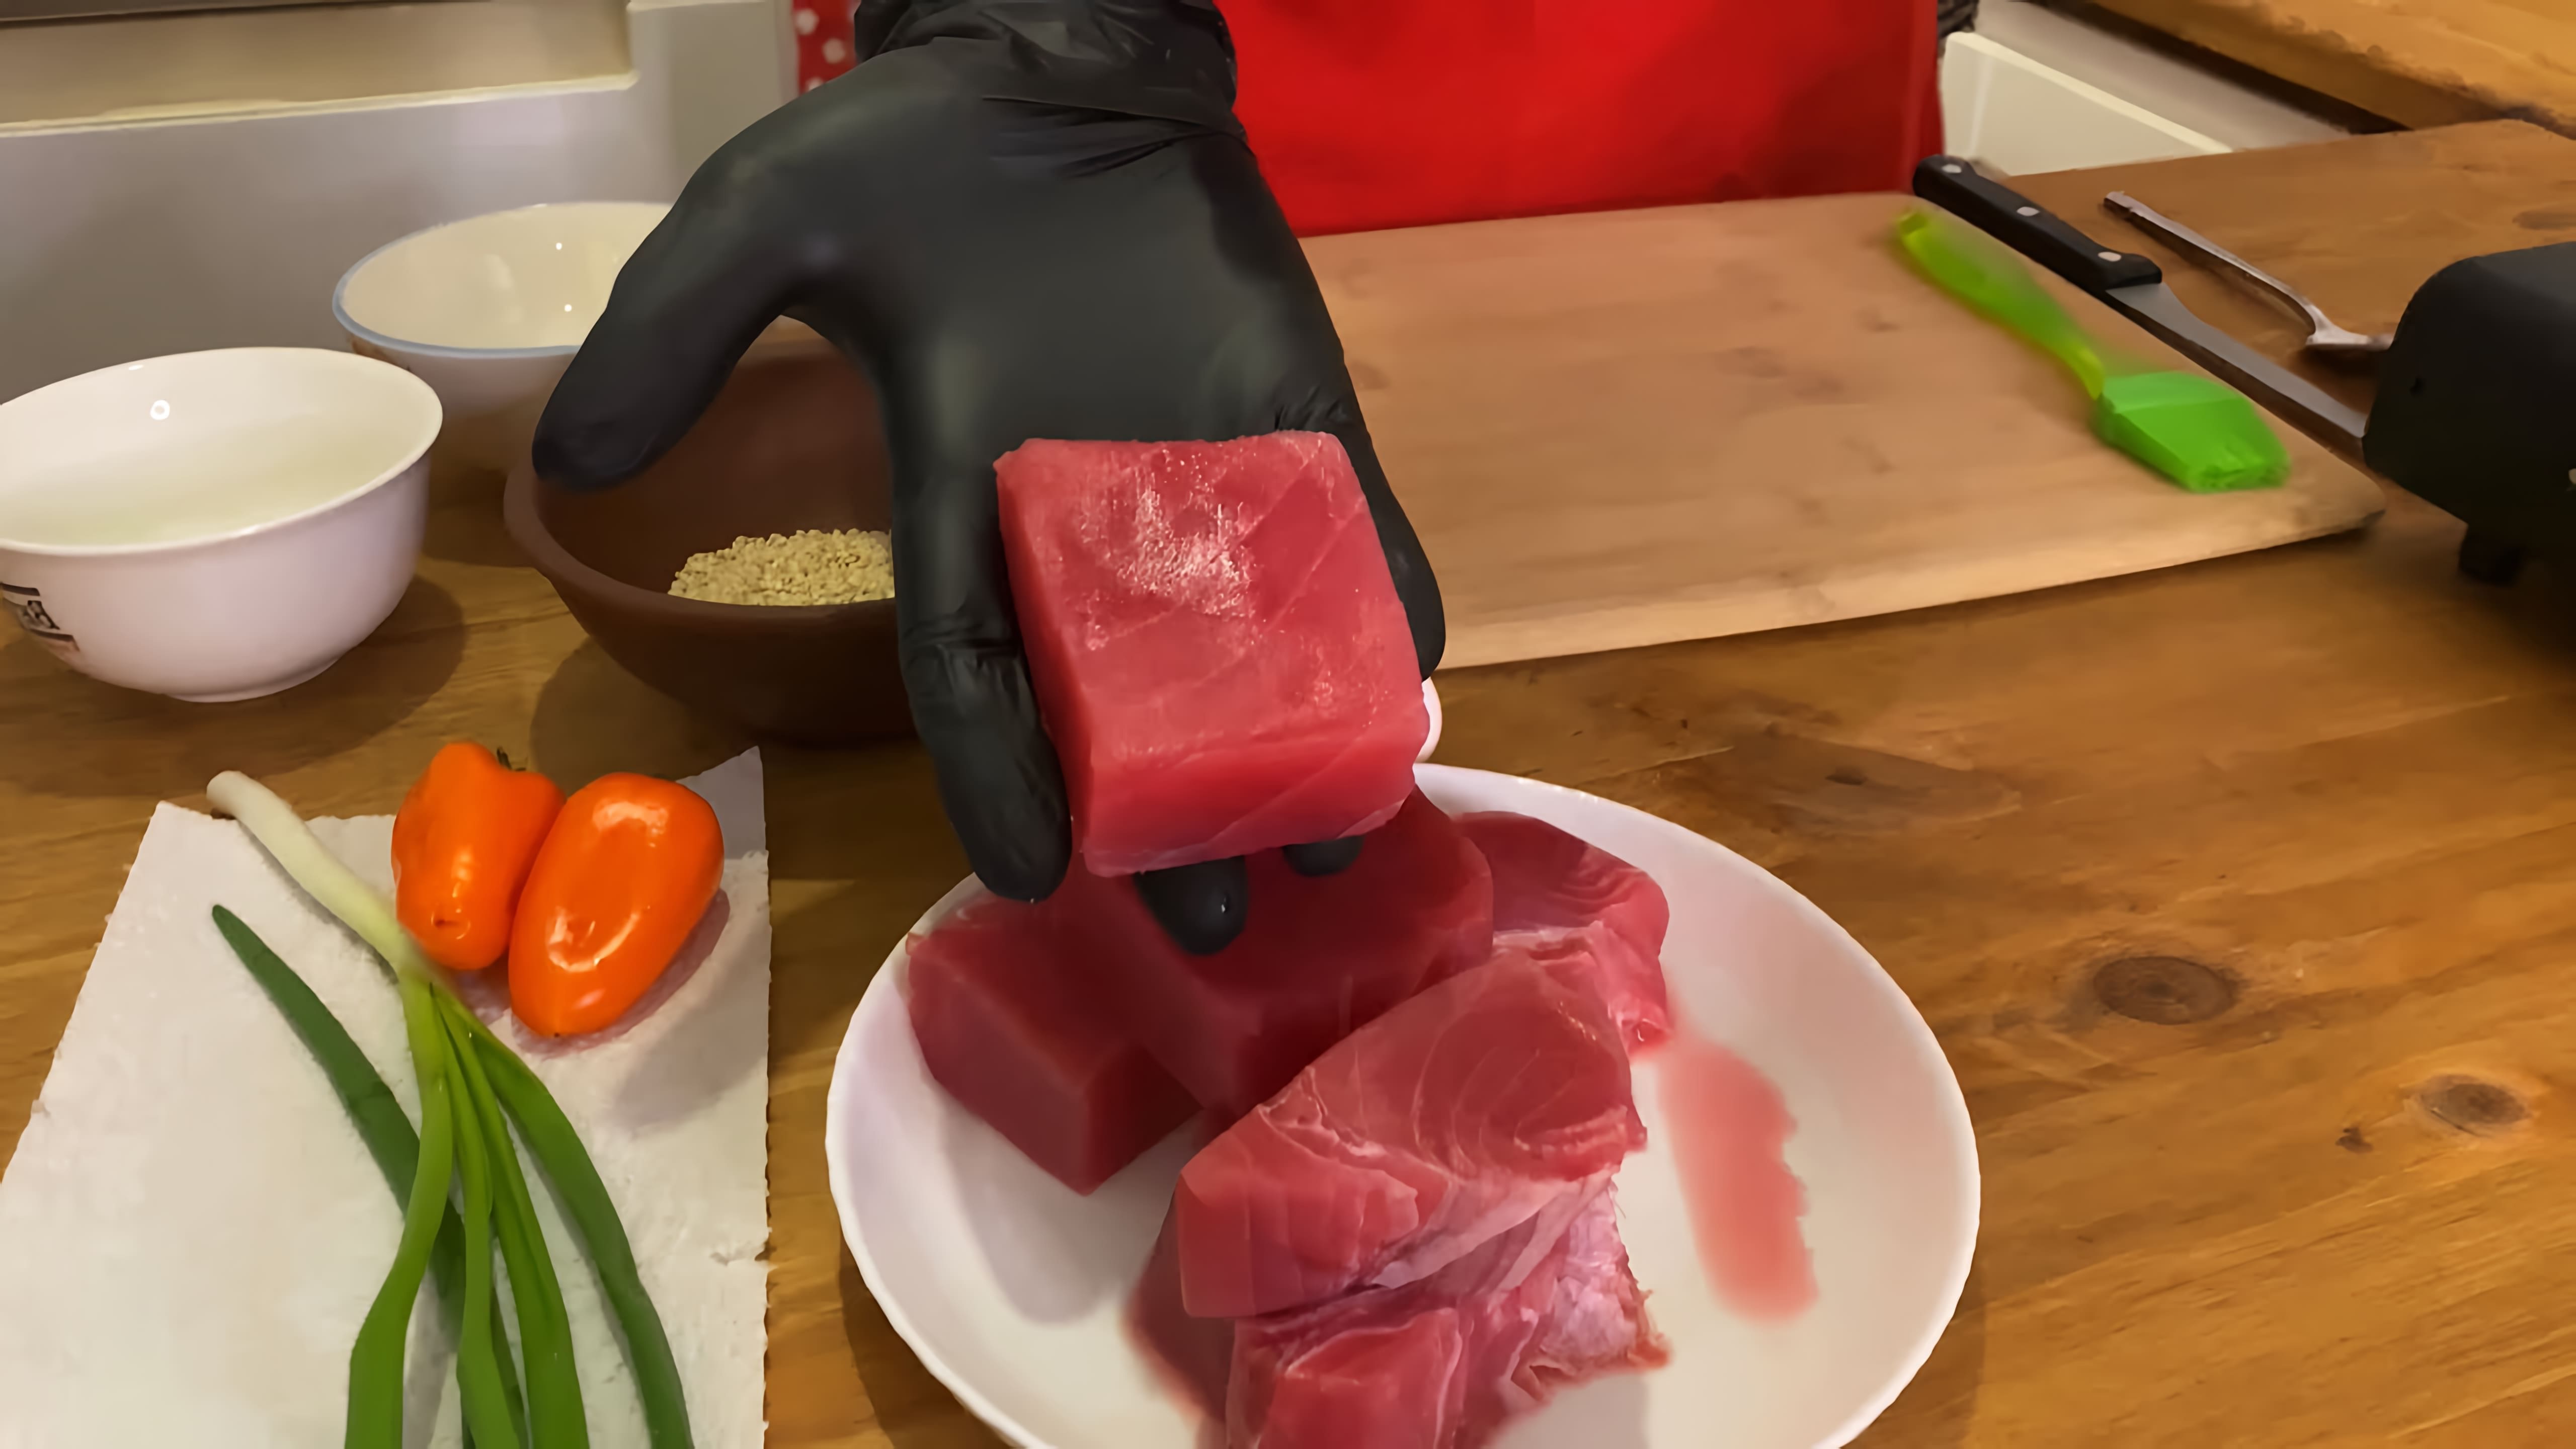 В этом видео демонстрируется простой и быстрый способ приготовления тунца, который можно подать как ресторанное блюдо